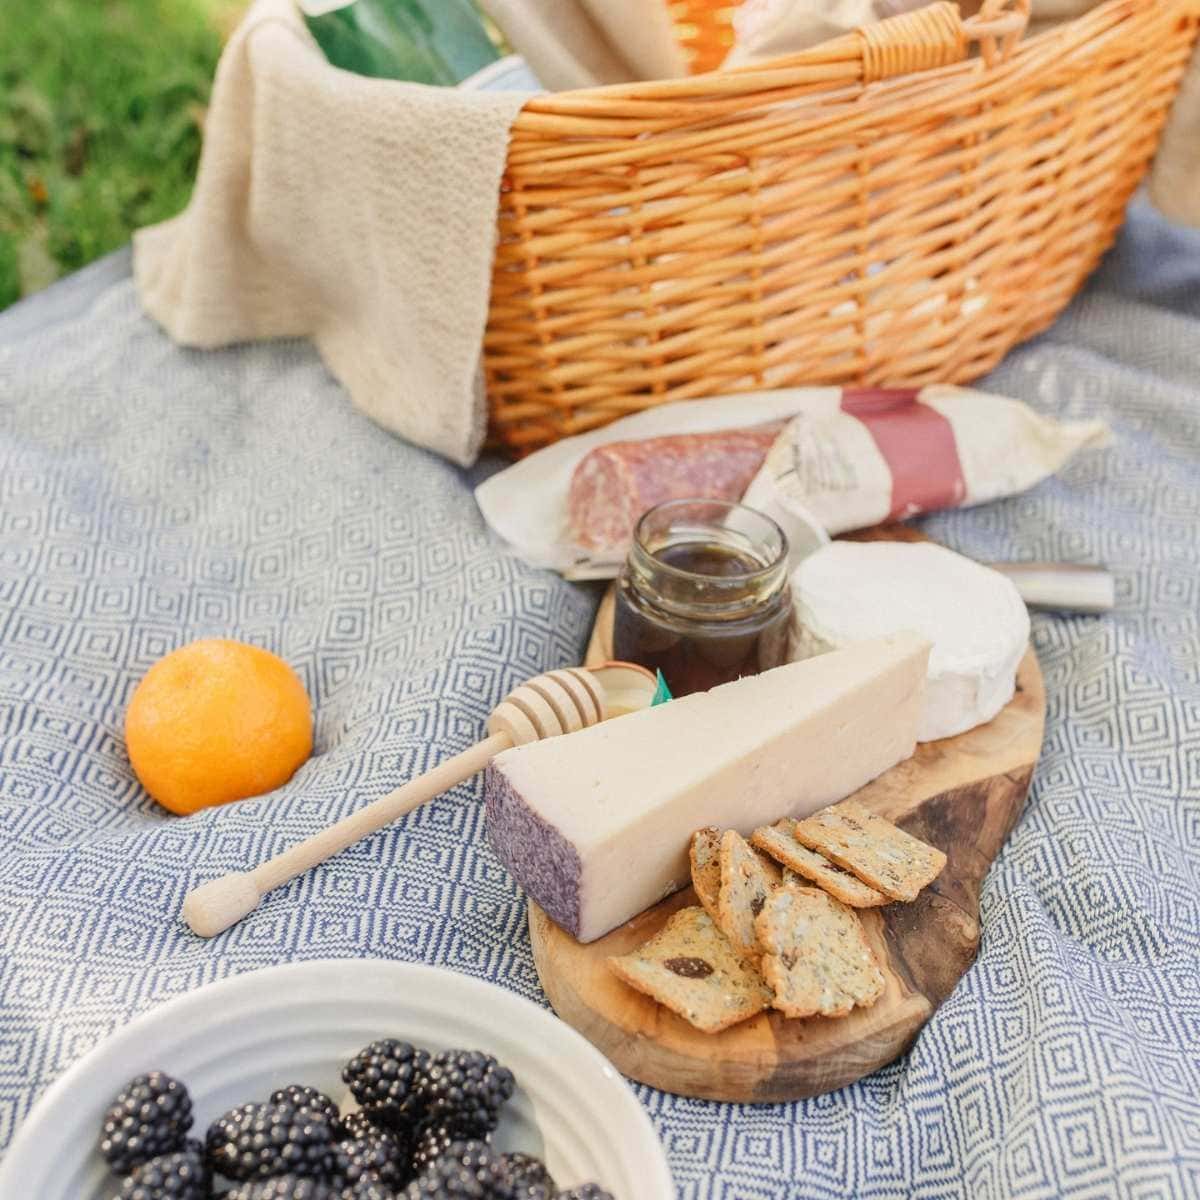 Picnic with Trader Joe's cheese, honey, salami, fruit, and a picnic basket.